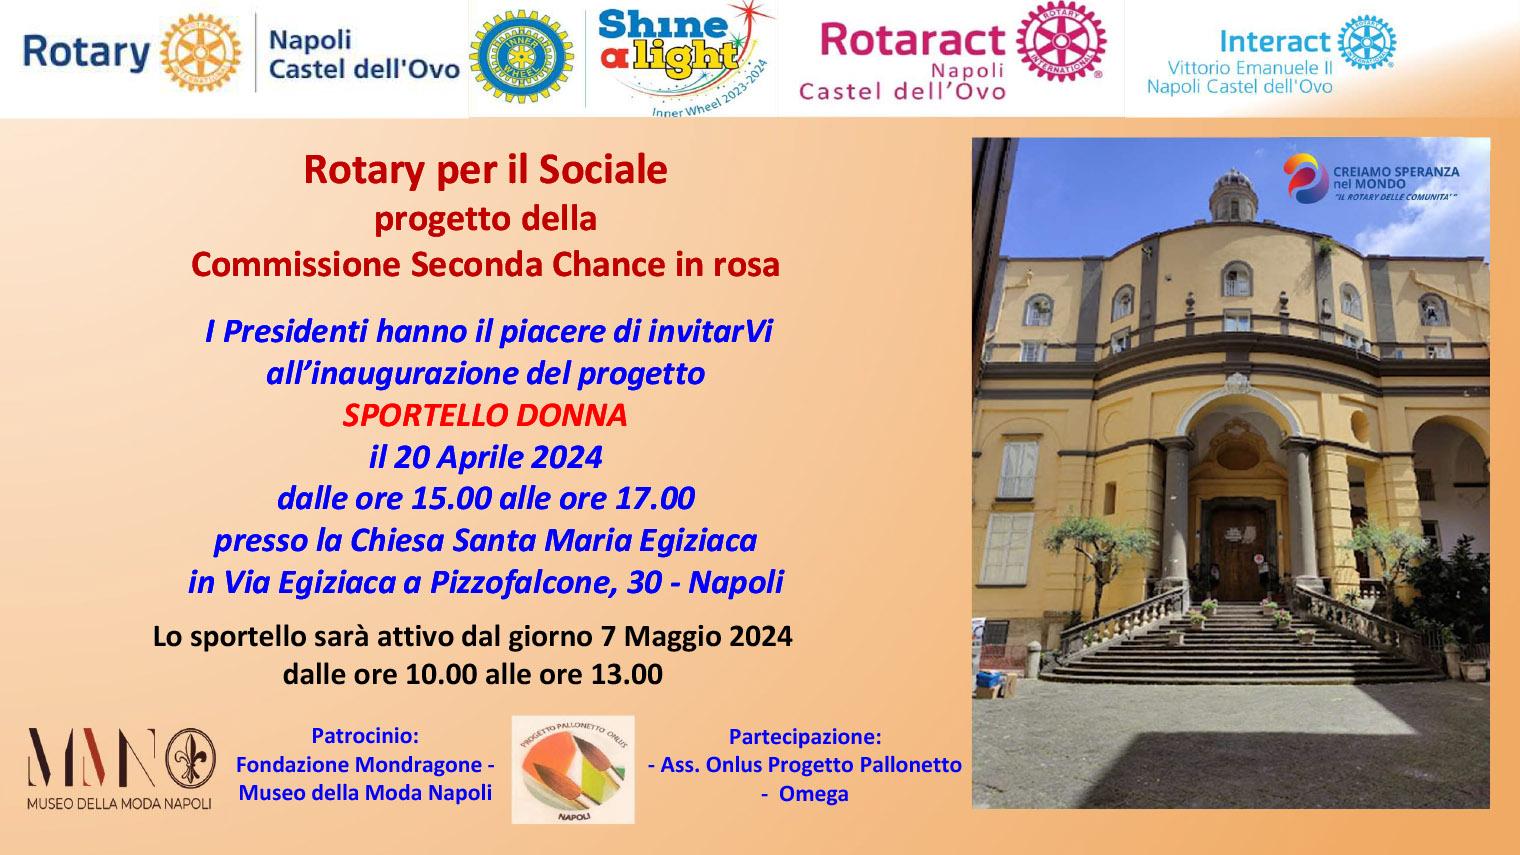 Rotary per il sociale: Sportello Donna – presentazione sabato 20 aprile alla Chiesa Santa Maria Egiziaca a Pizzofalcone